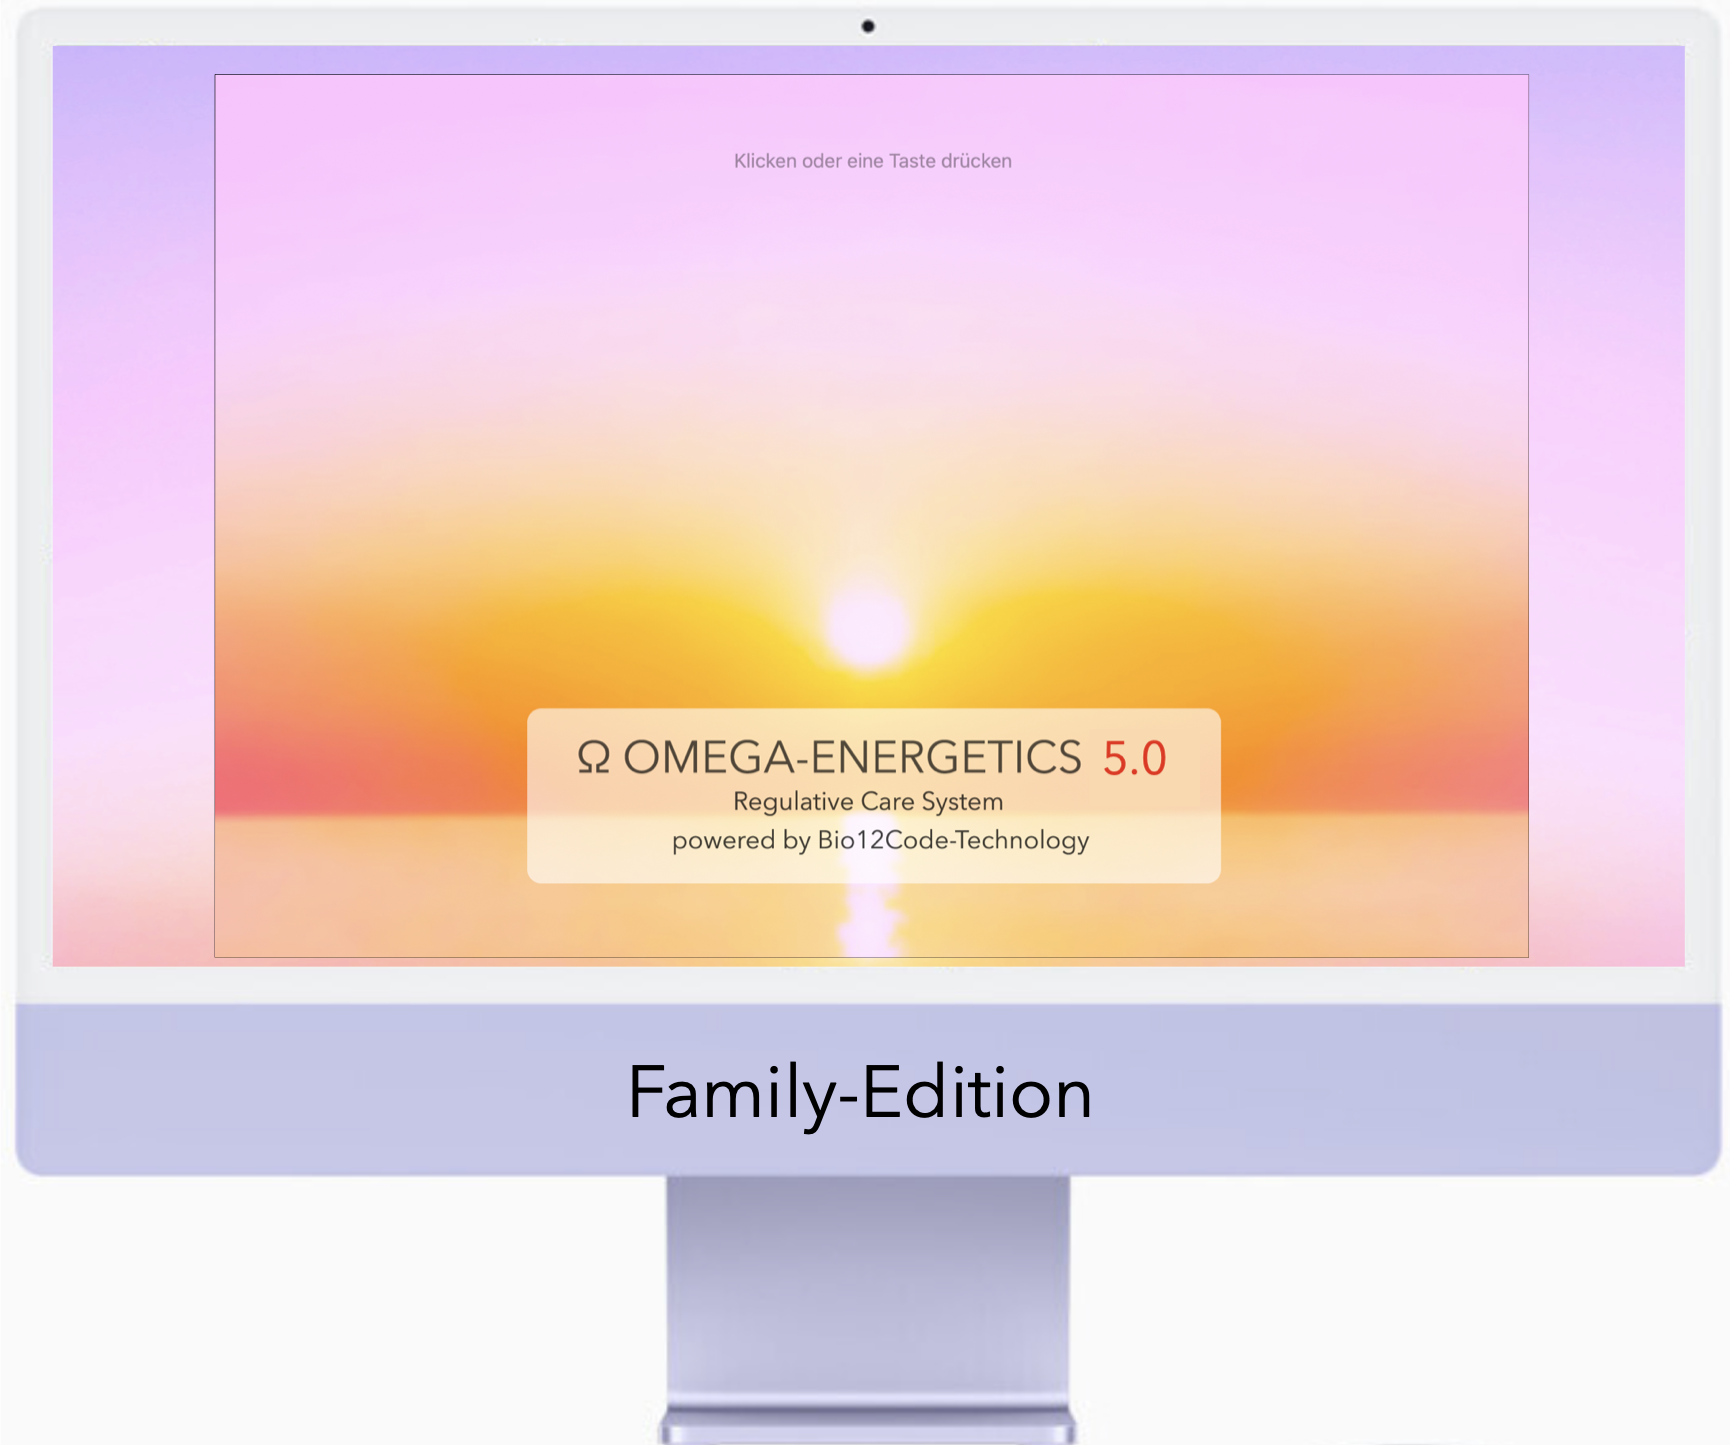 C - Omega-Energetics 5.0 Family Festpreis